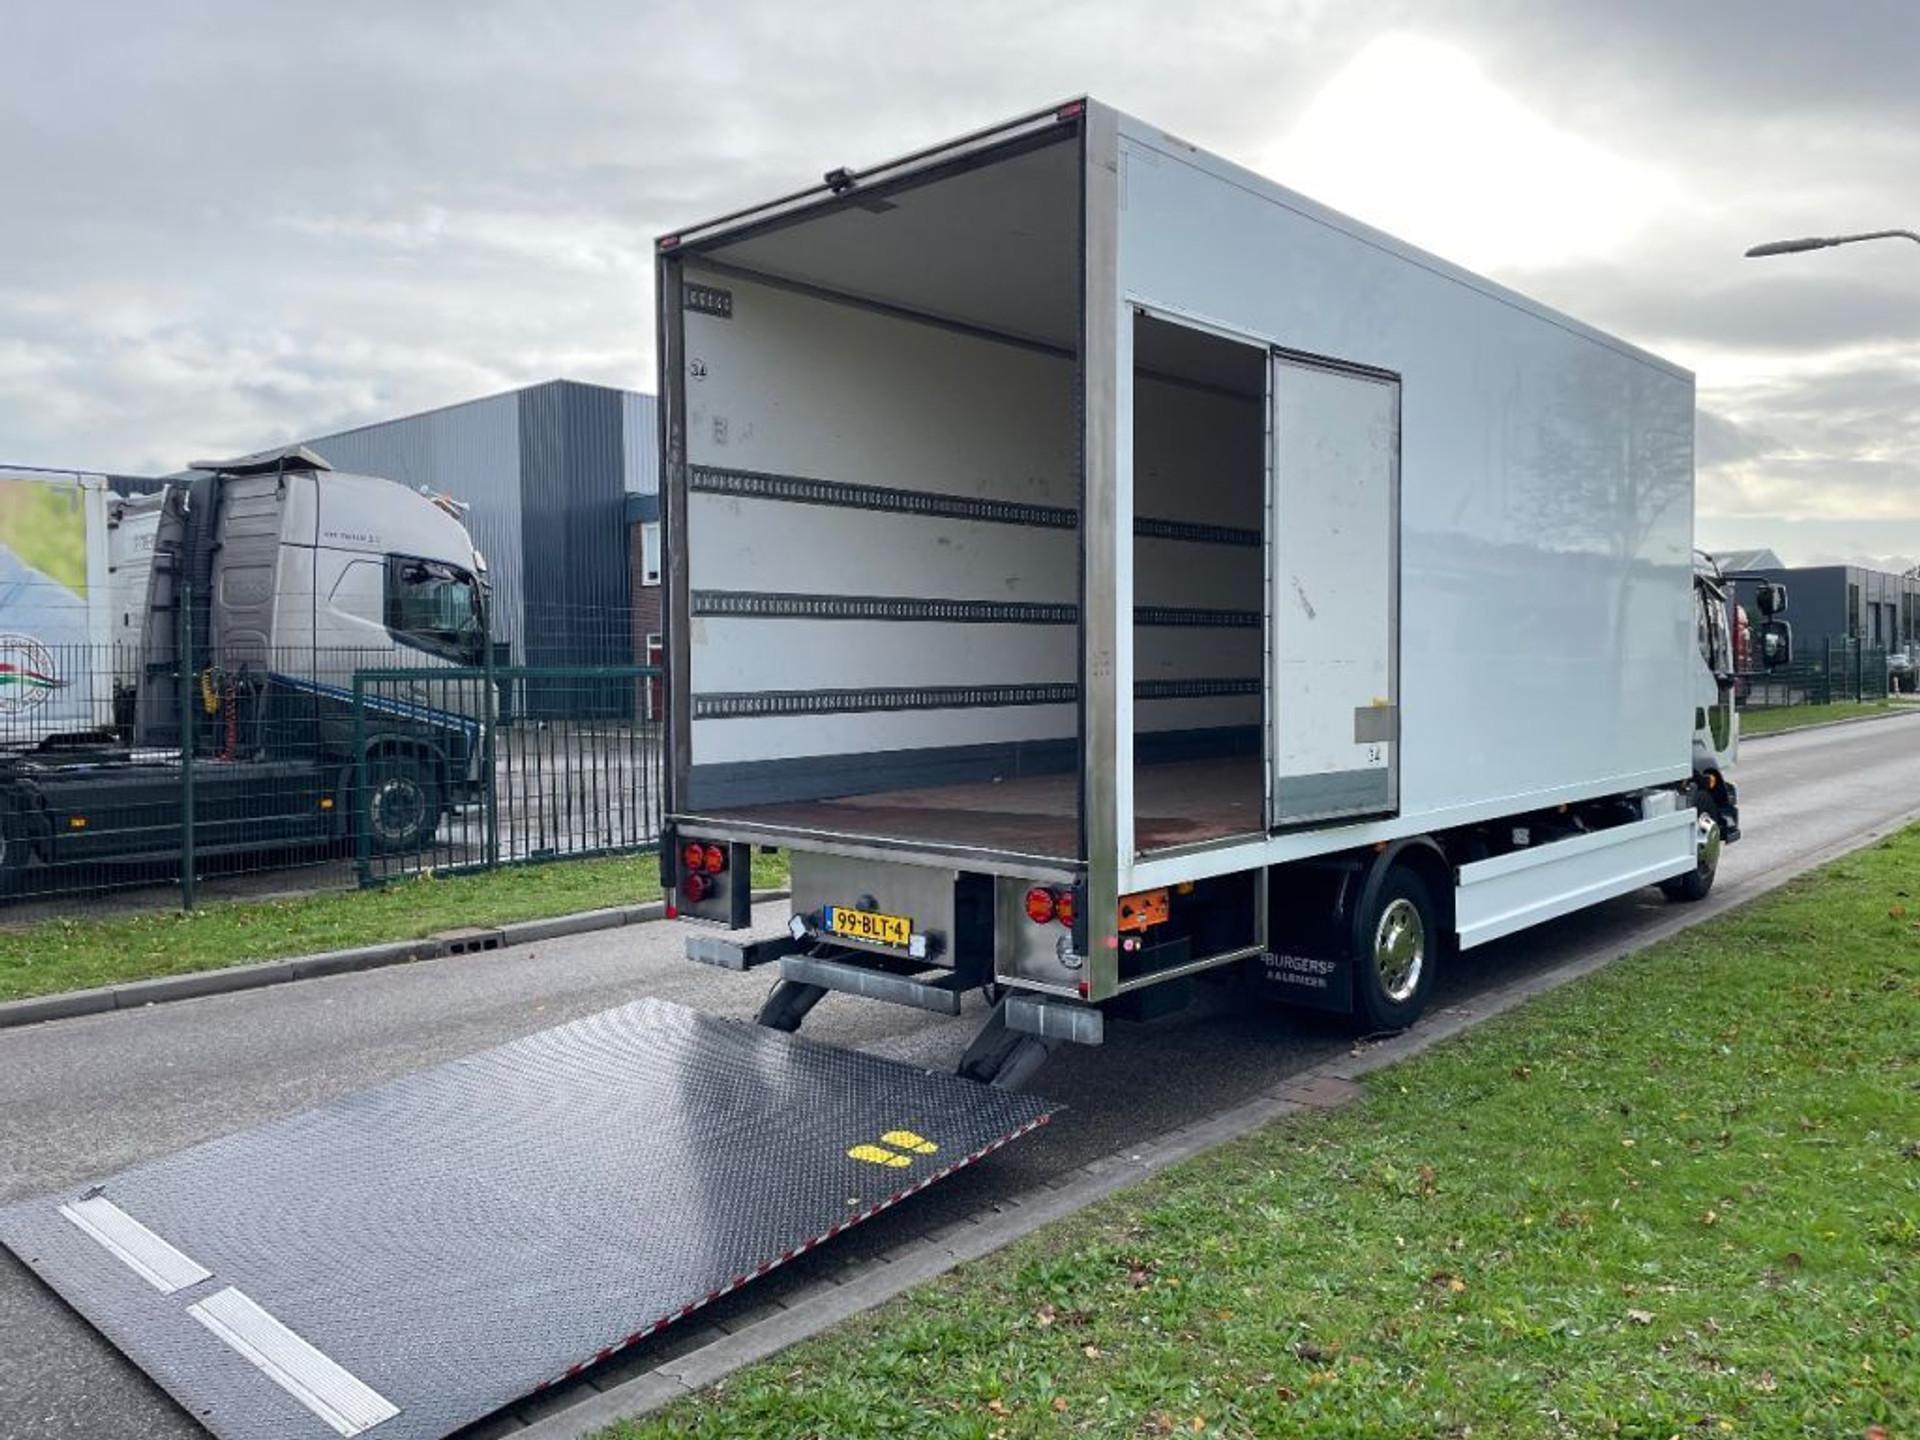 Foto 23 van Volvo FL verhuiswagen 2019 only 133.000 km